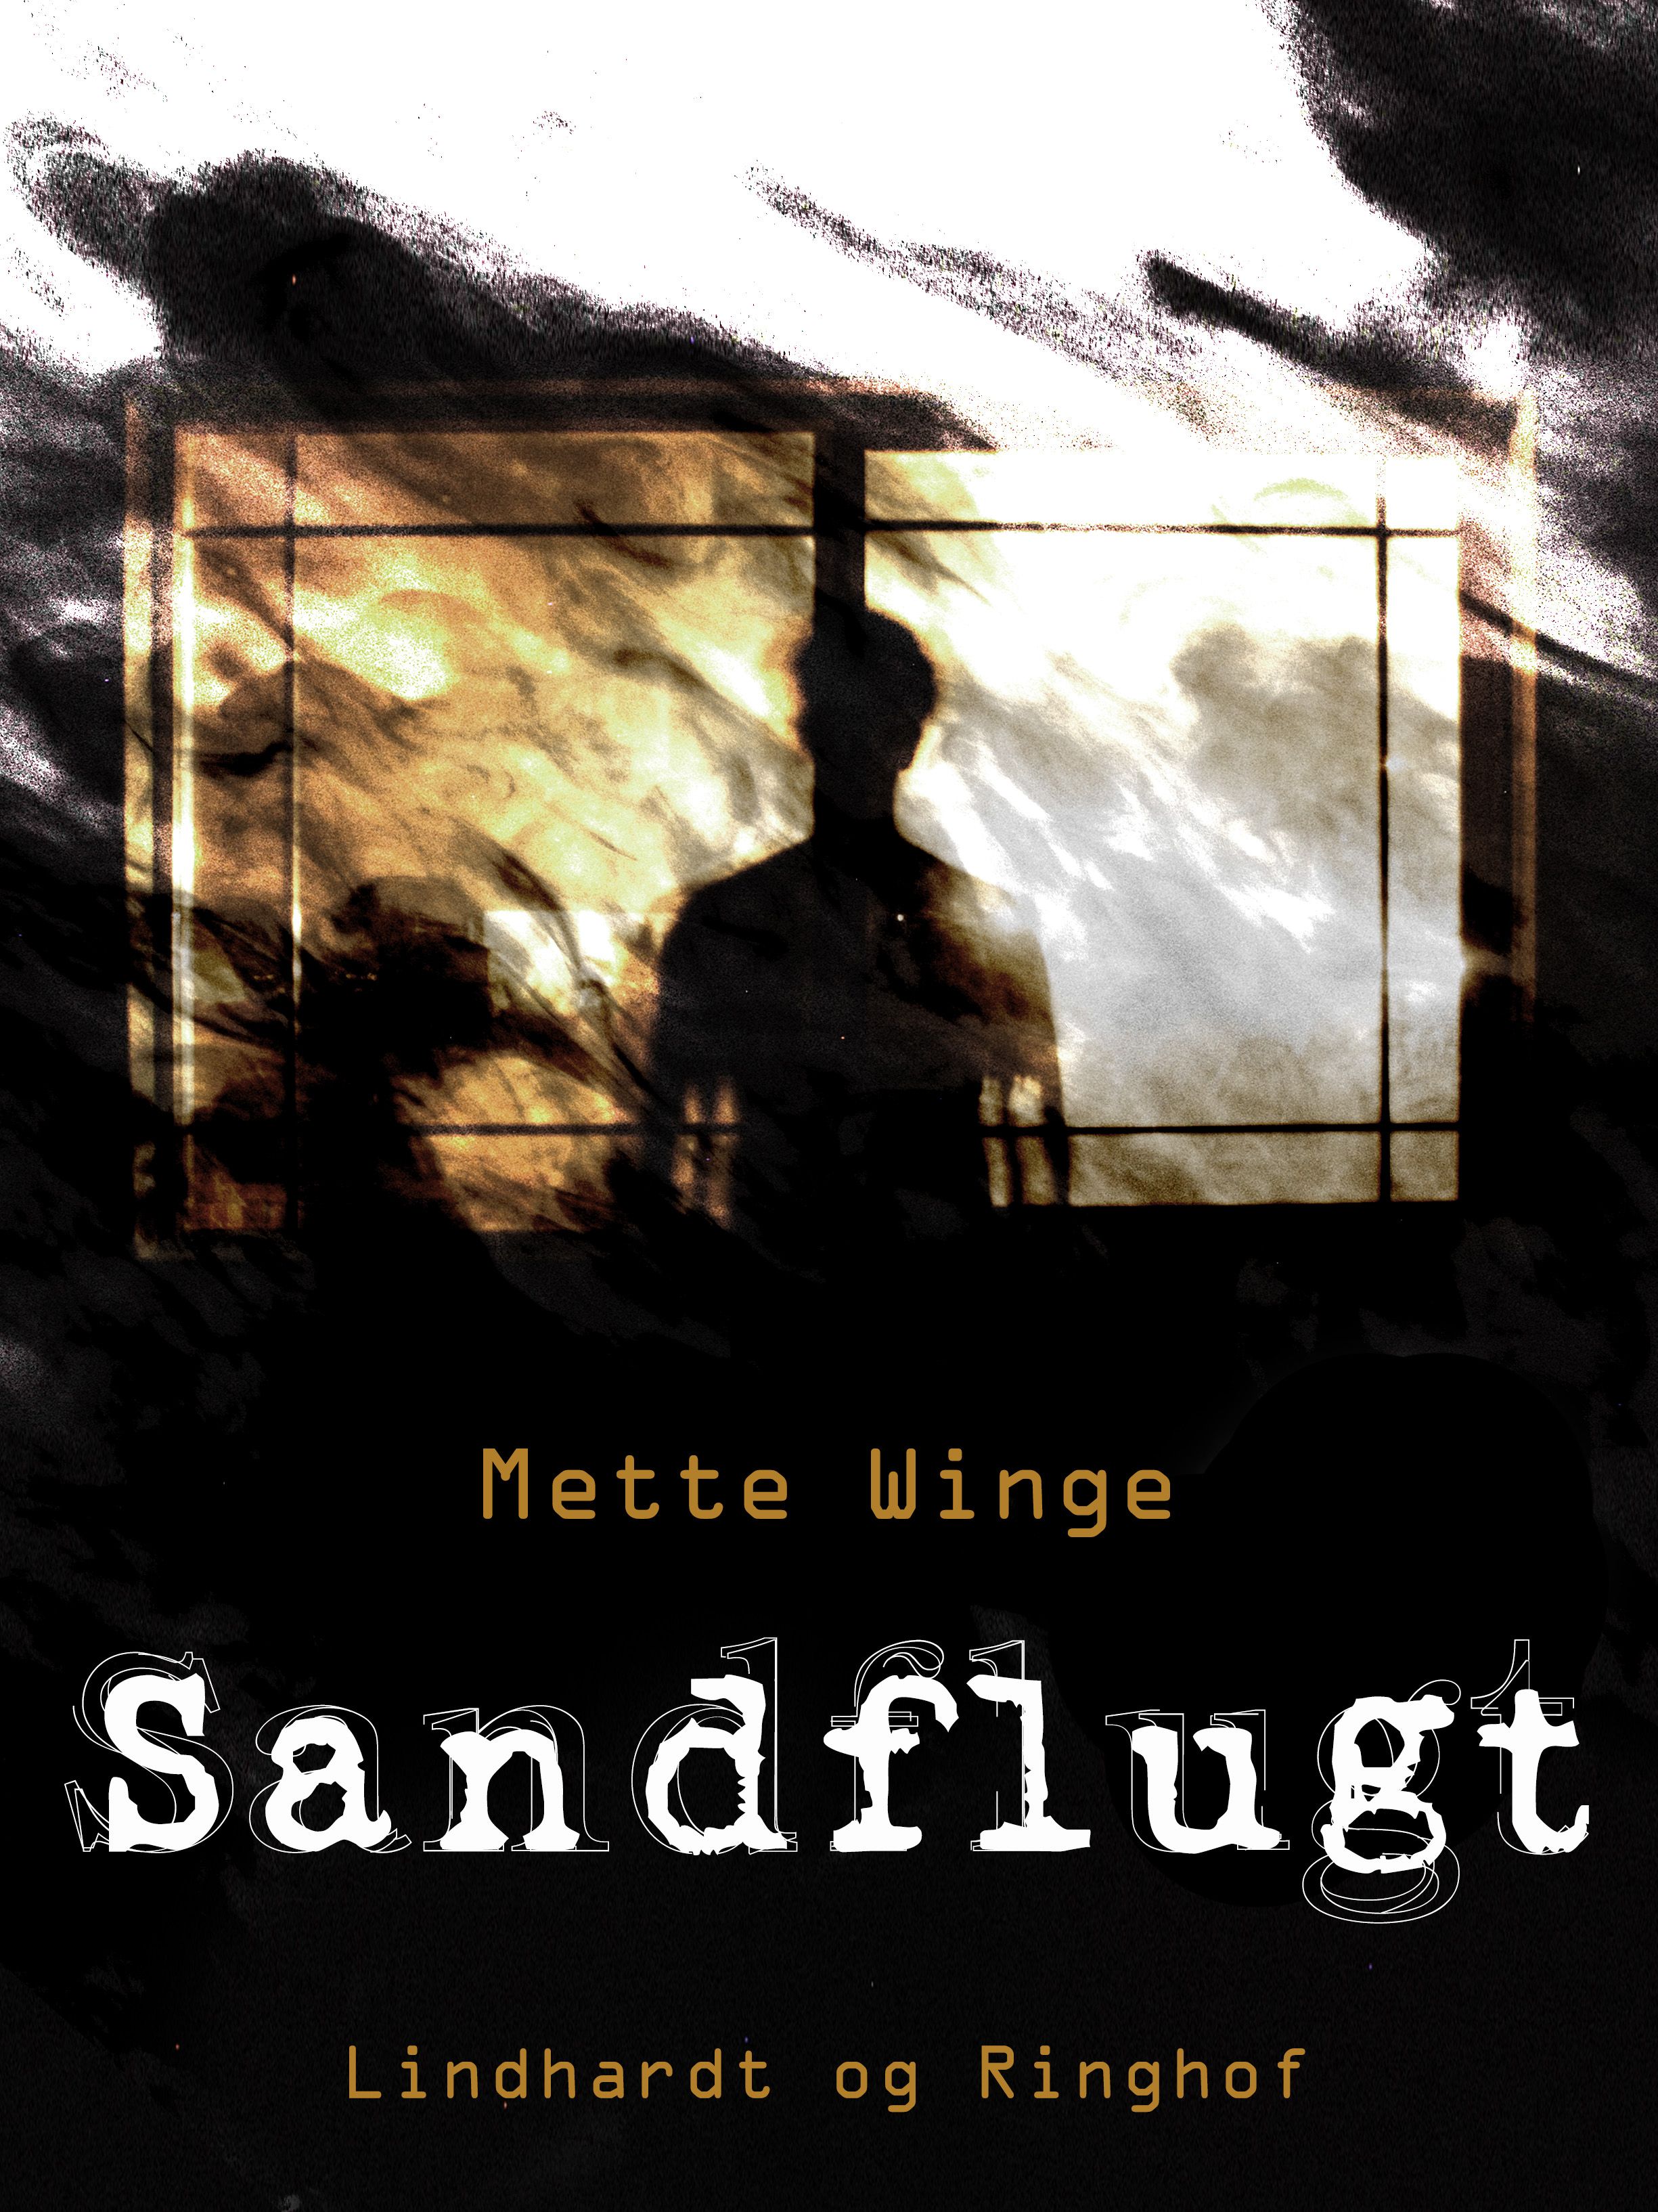 Sandflugt, eBook by Mette Winge